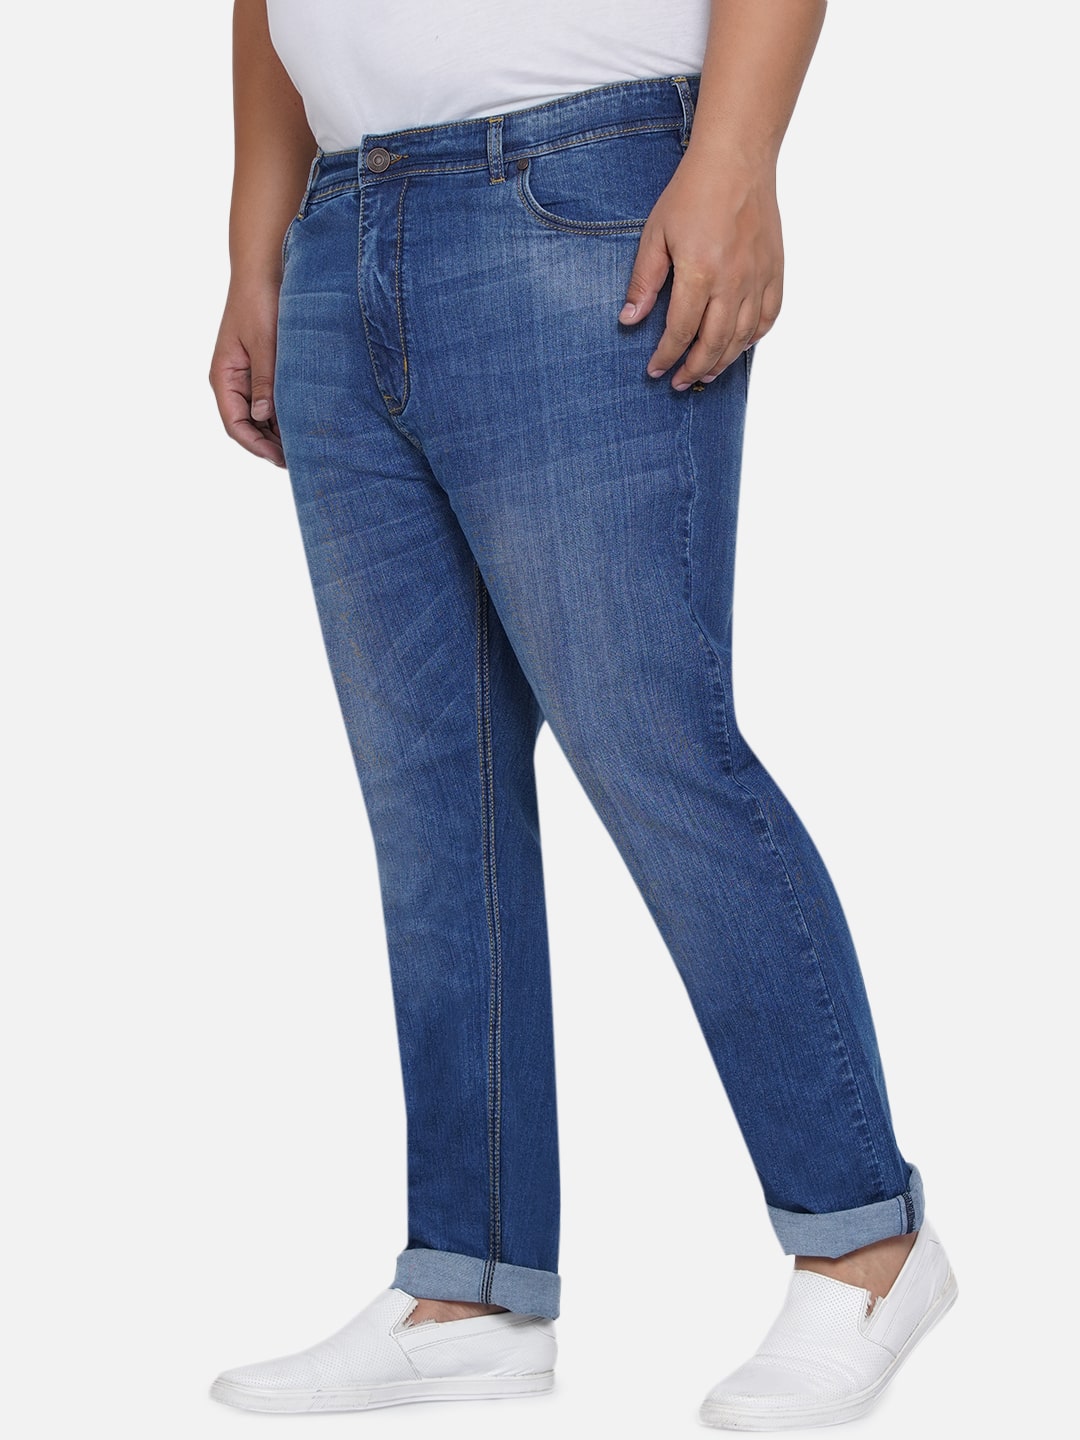 bottomwear/jeans/EJPJ25012/ejpj25012-6.jpg